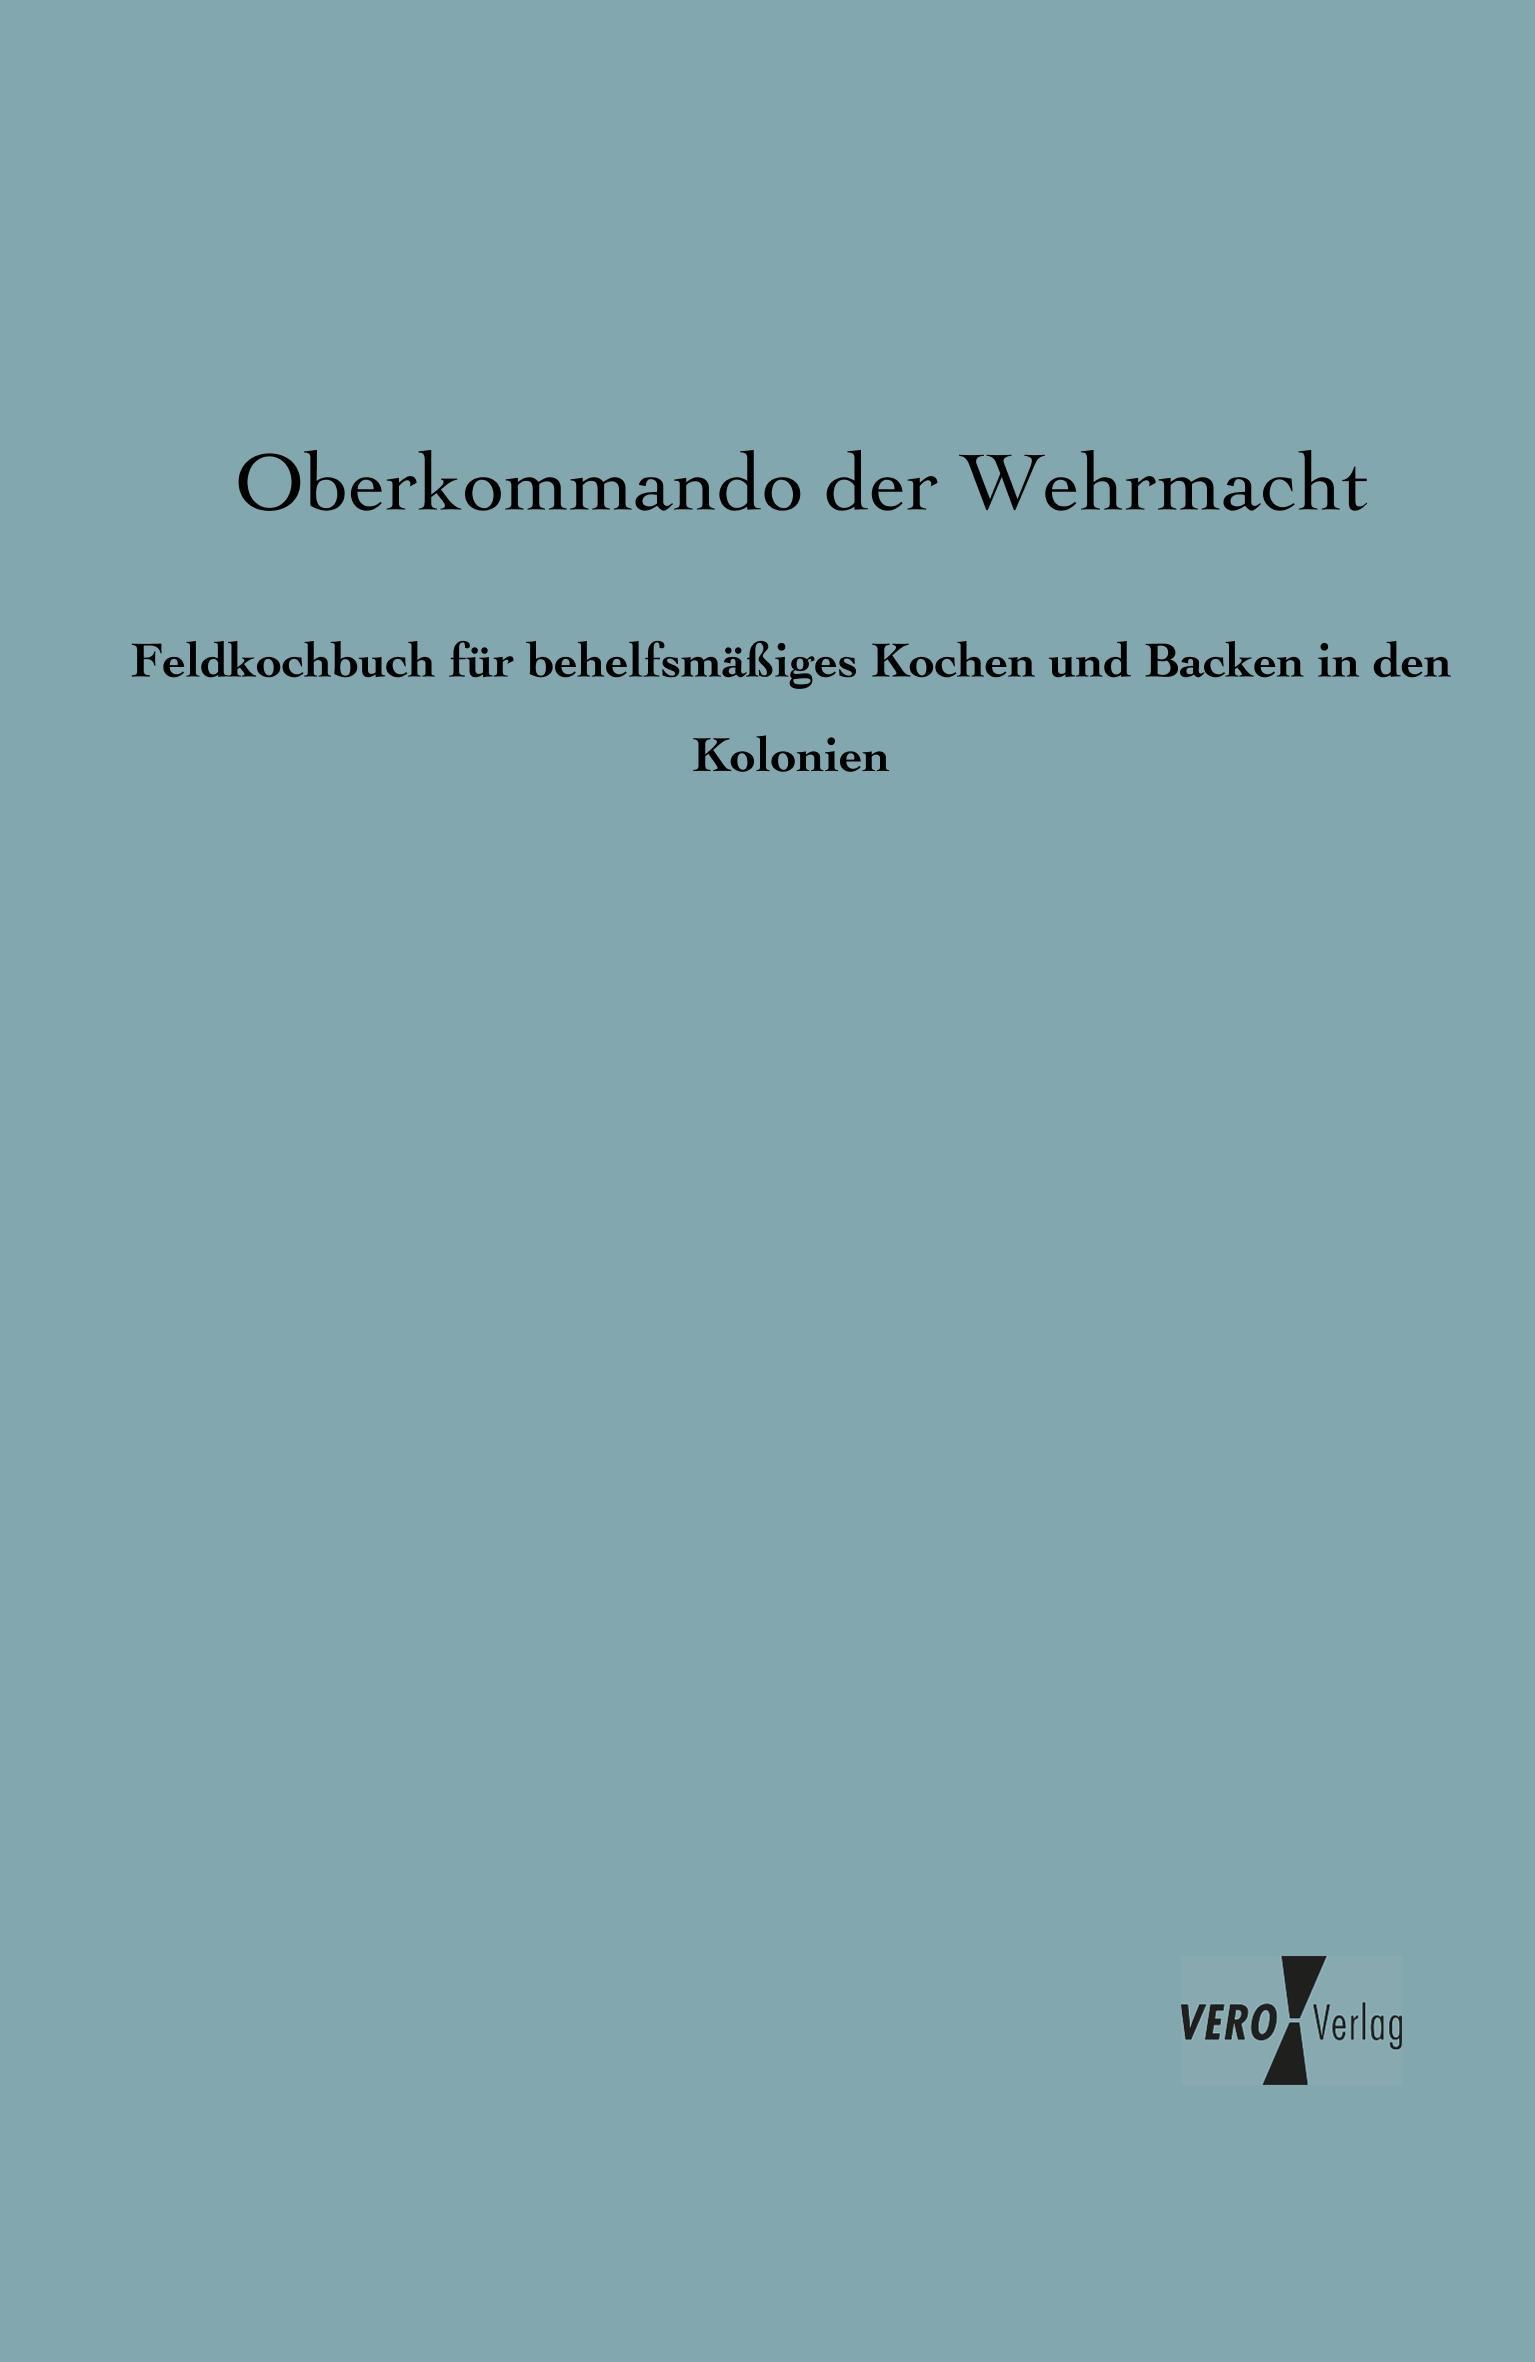 Wehrmacht Handbuch Orden Hormann: Militärische Auszeichnungen Ehrenzeichen d 